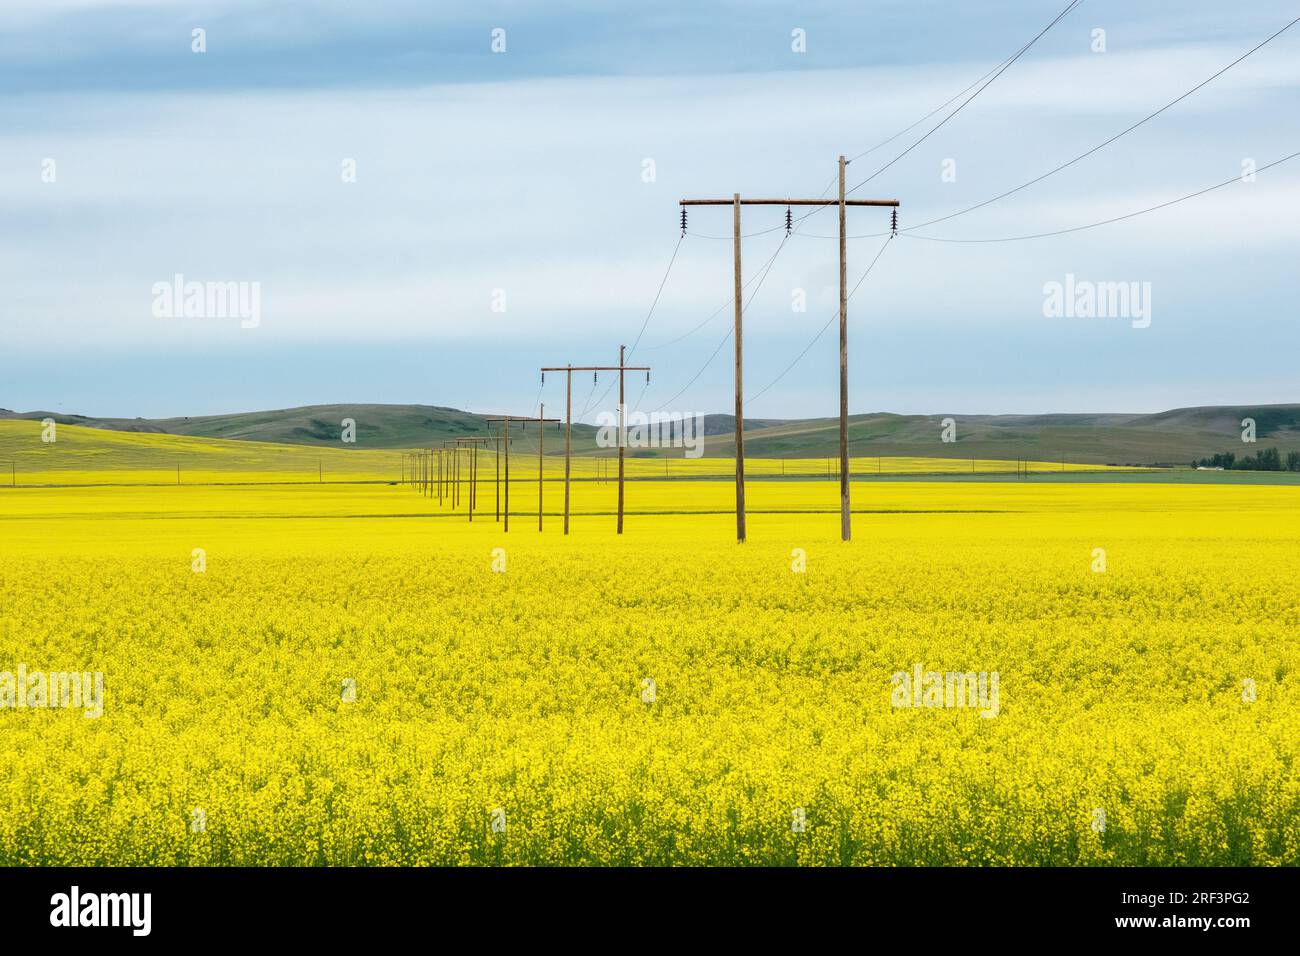 Hilfsmasten, die durch ein riesiges gelbes Feld von Raps in den Prärien von Saskatchewan gezogen wurden. Stockfoto